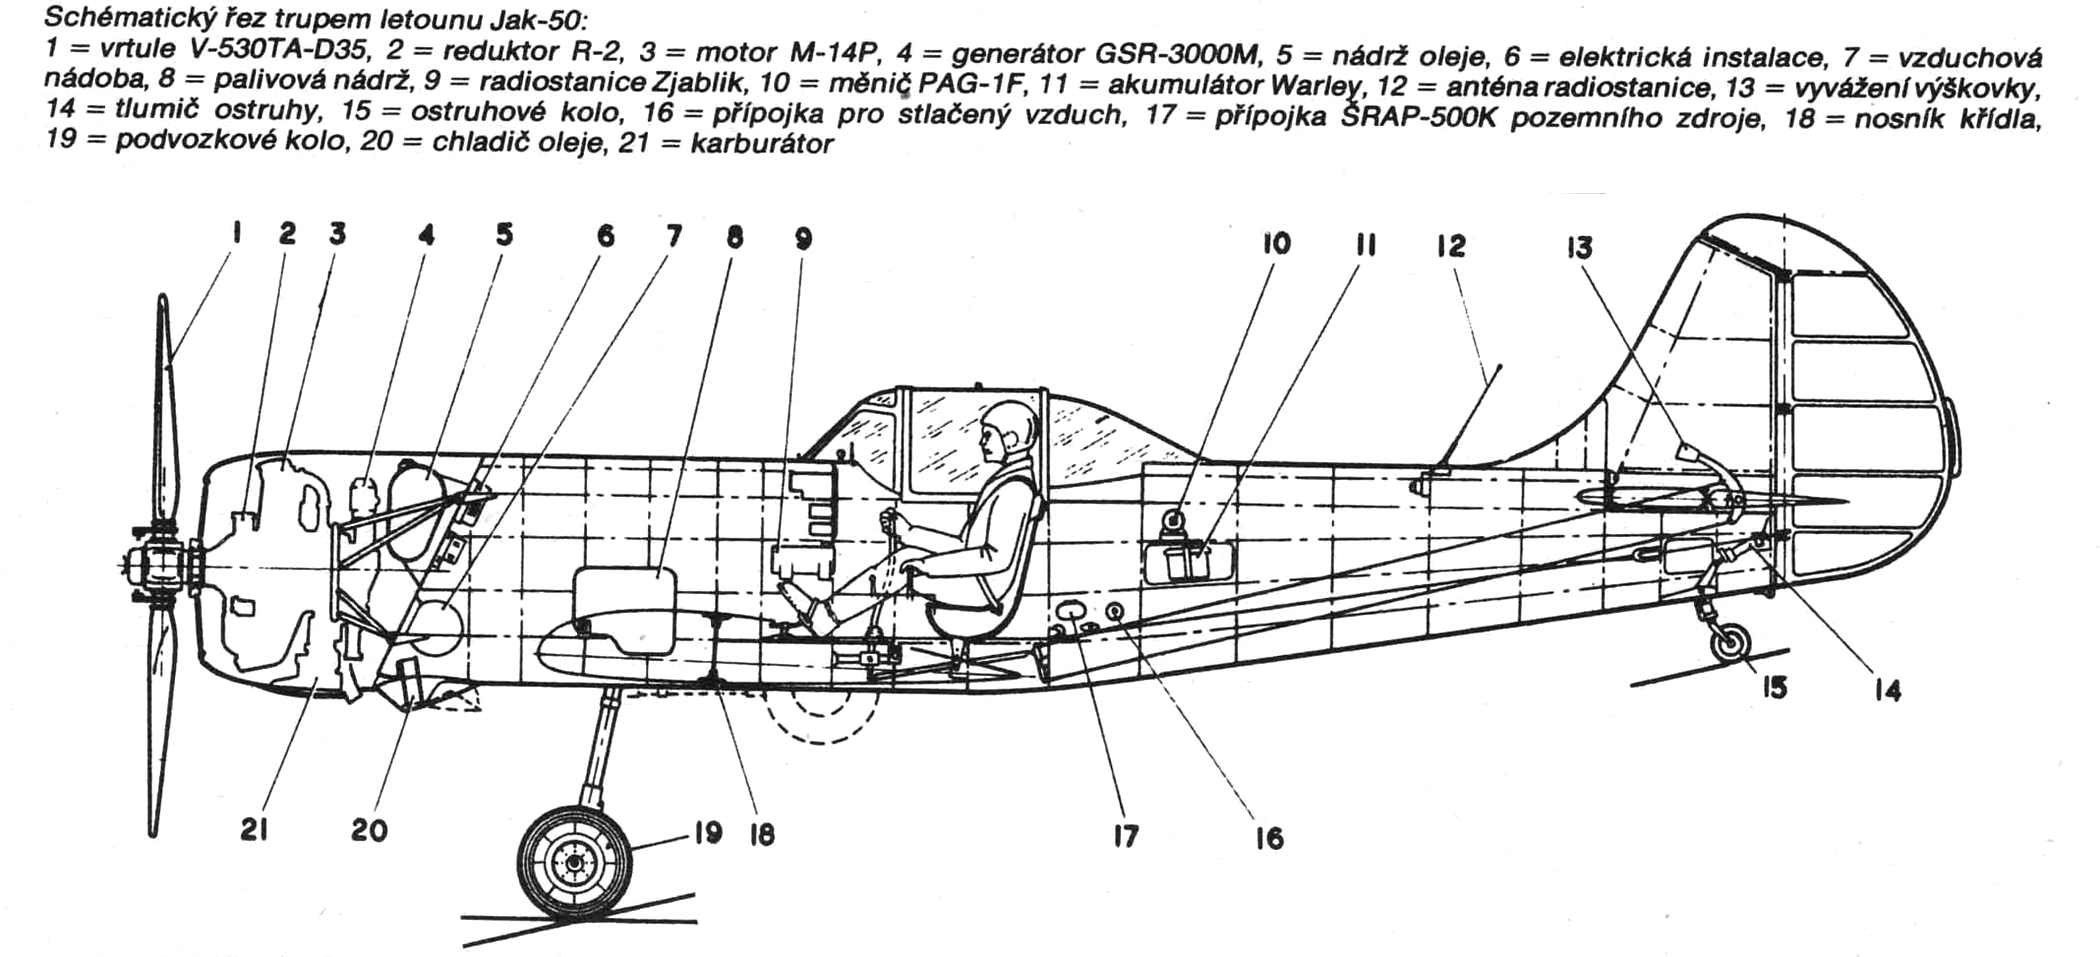 Легкий самолет як-12: технические характеристики, фото, история создания